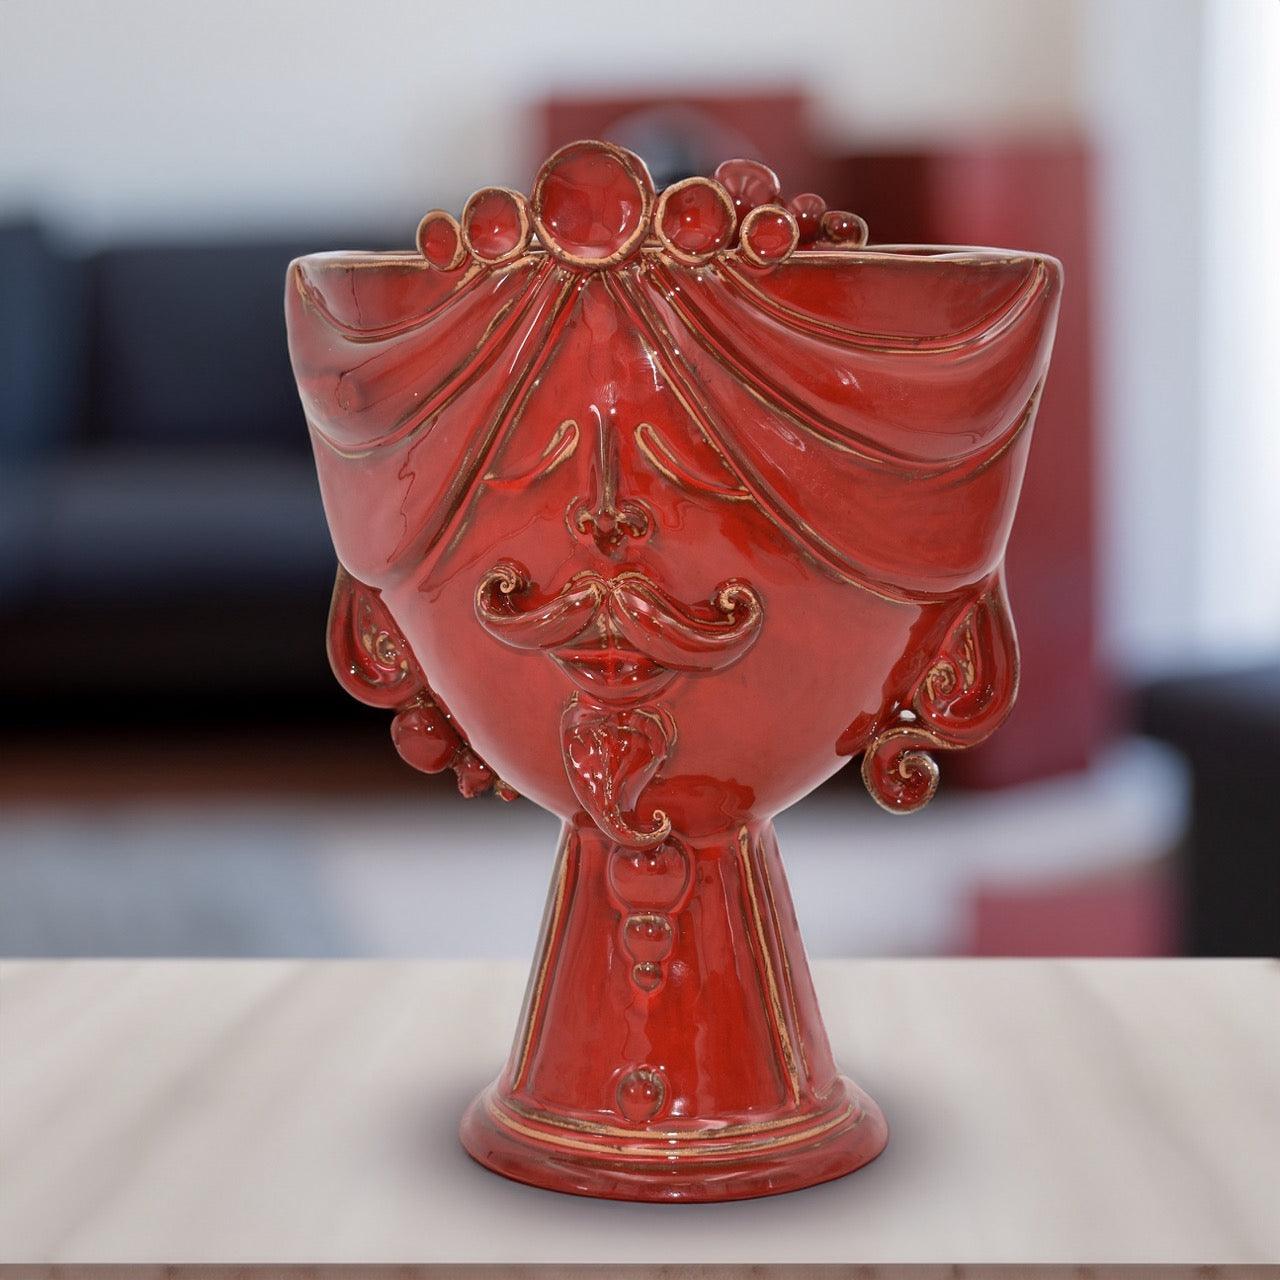 Testa di Moro "Zahira" uomo in Ceramica di Caltagirone | Rosso Fuoco 30 cm - Ceramiche di Caltagirone Sofia